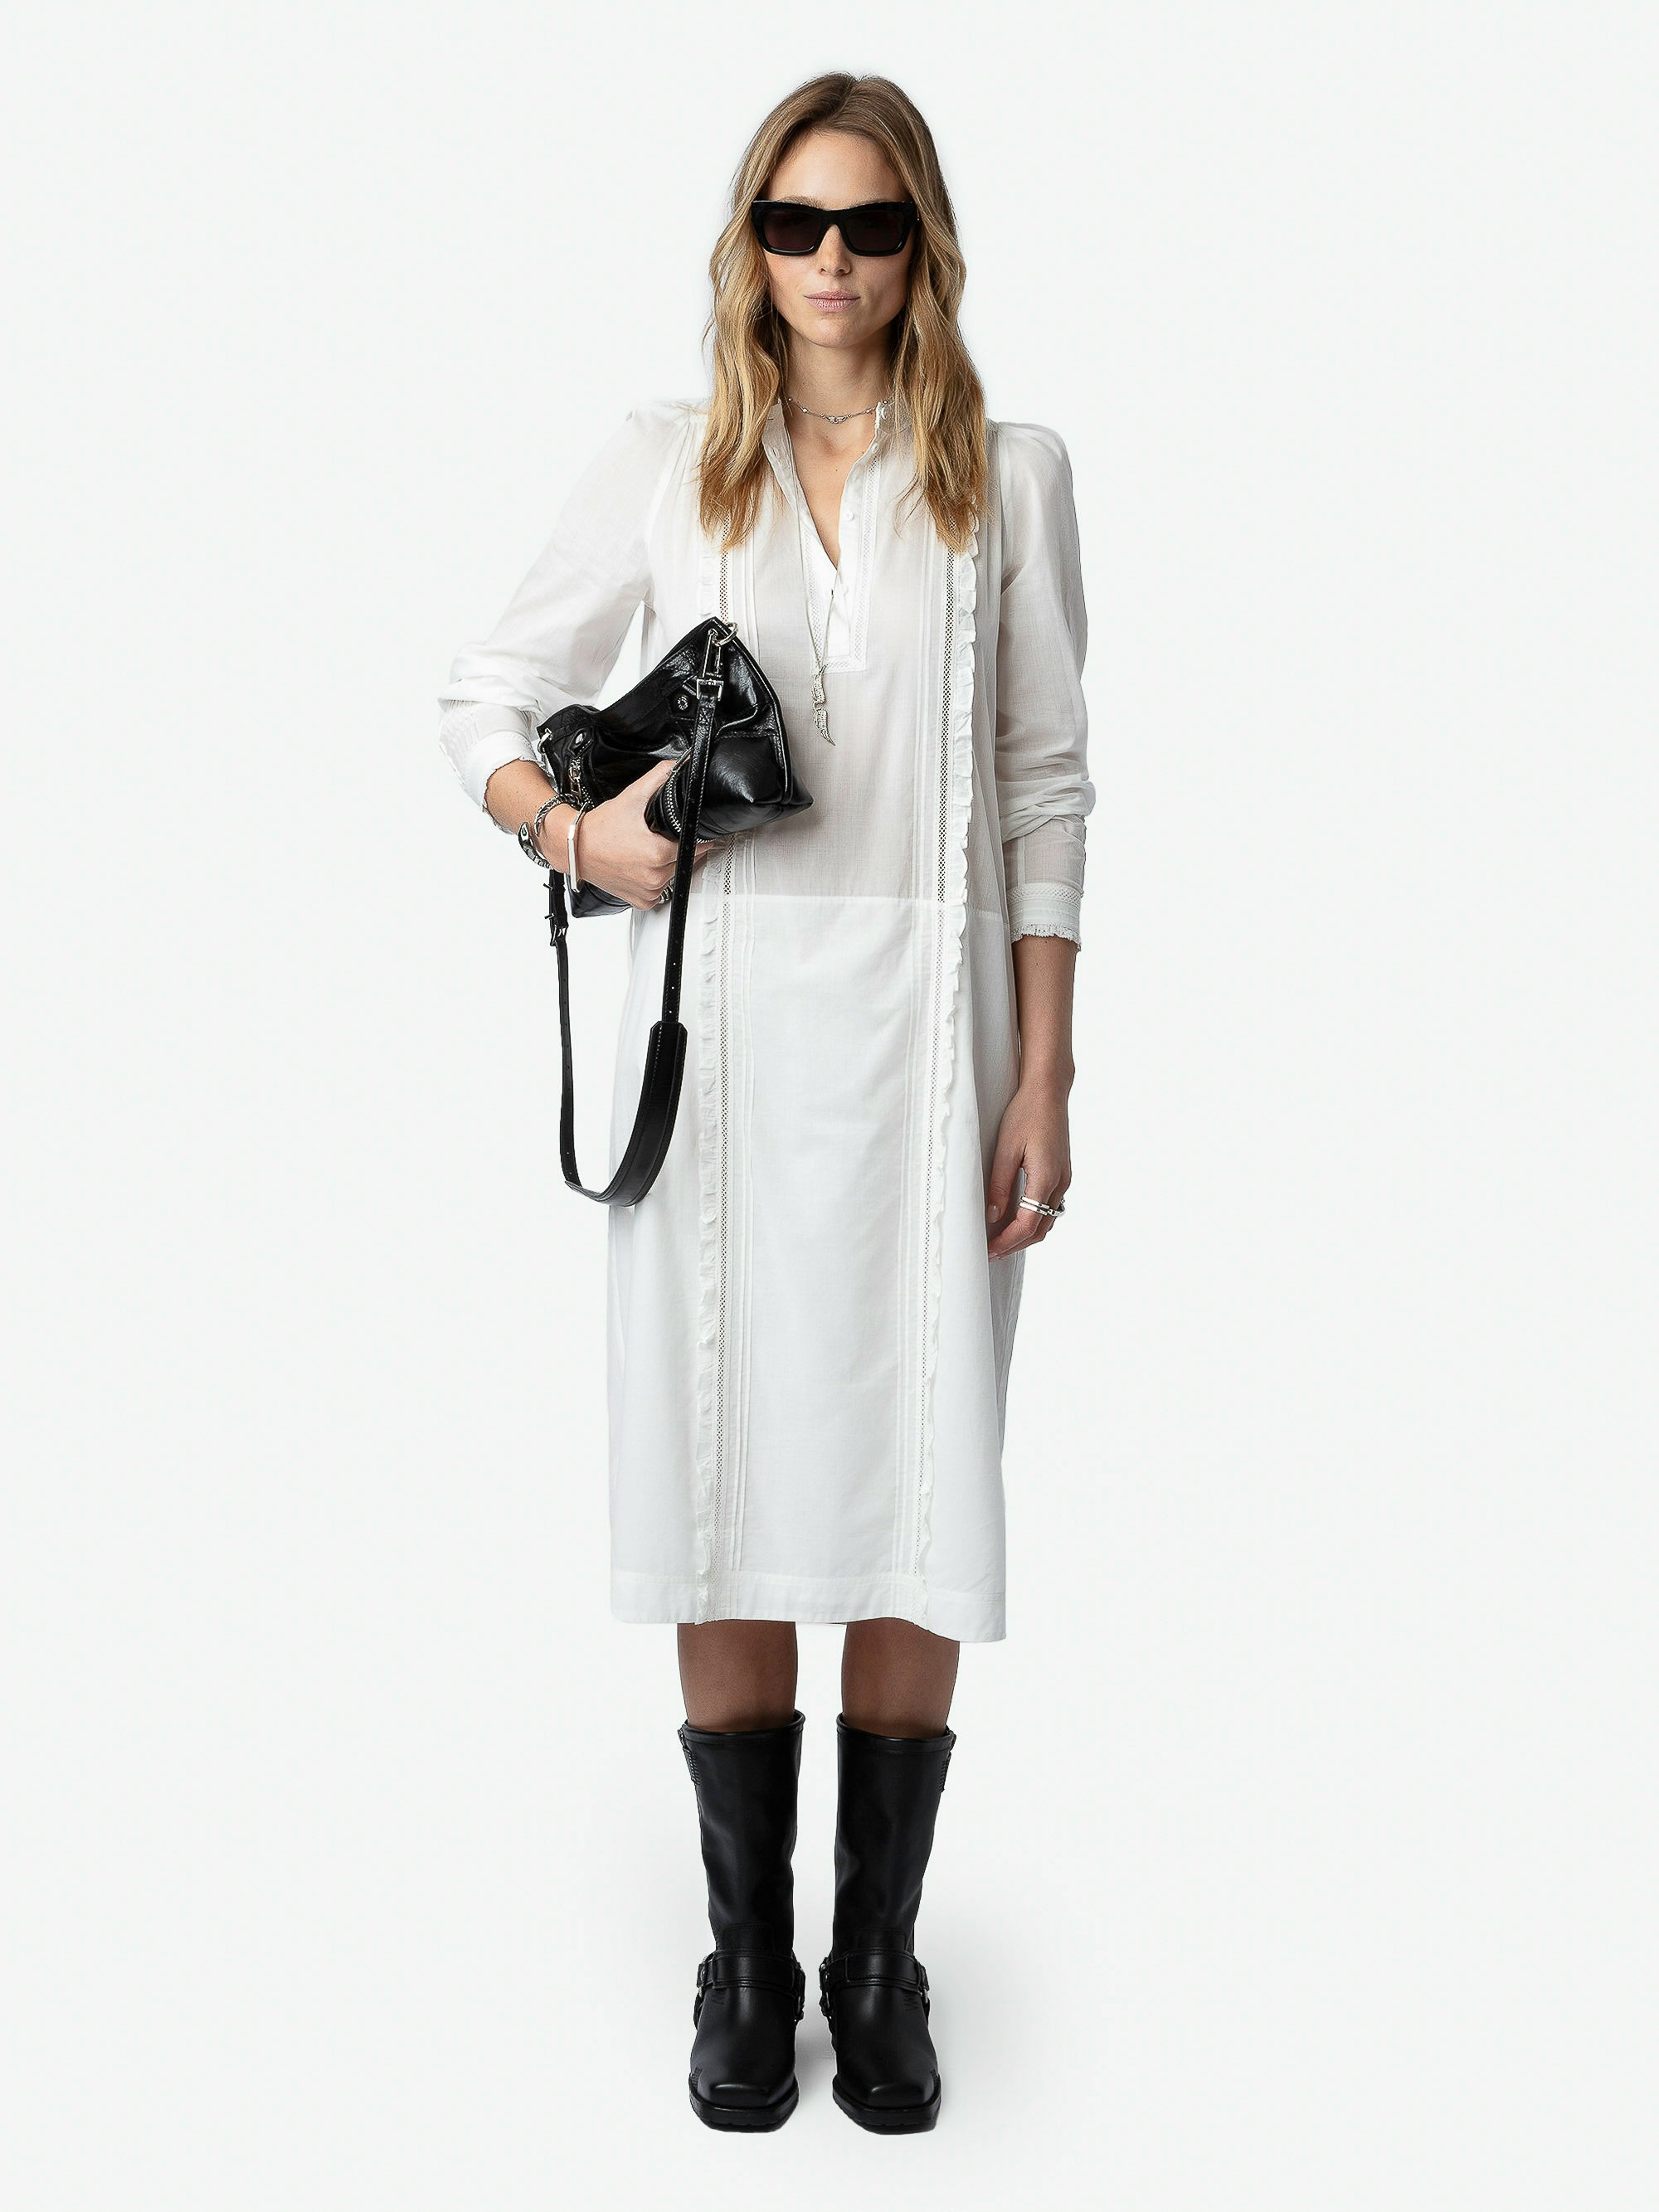 Robe Ritchil - Robe mi-longue en voile de coton blanc à manches longues, ceinture amovible, dentelle et volants.